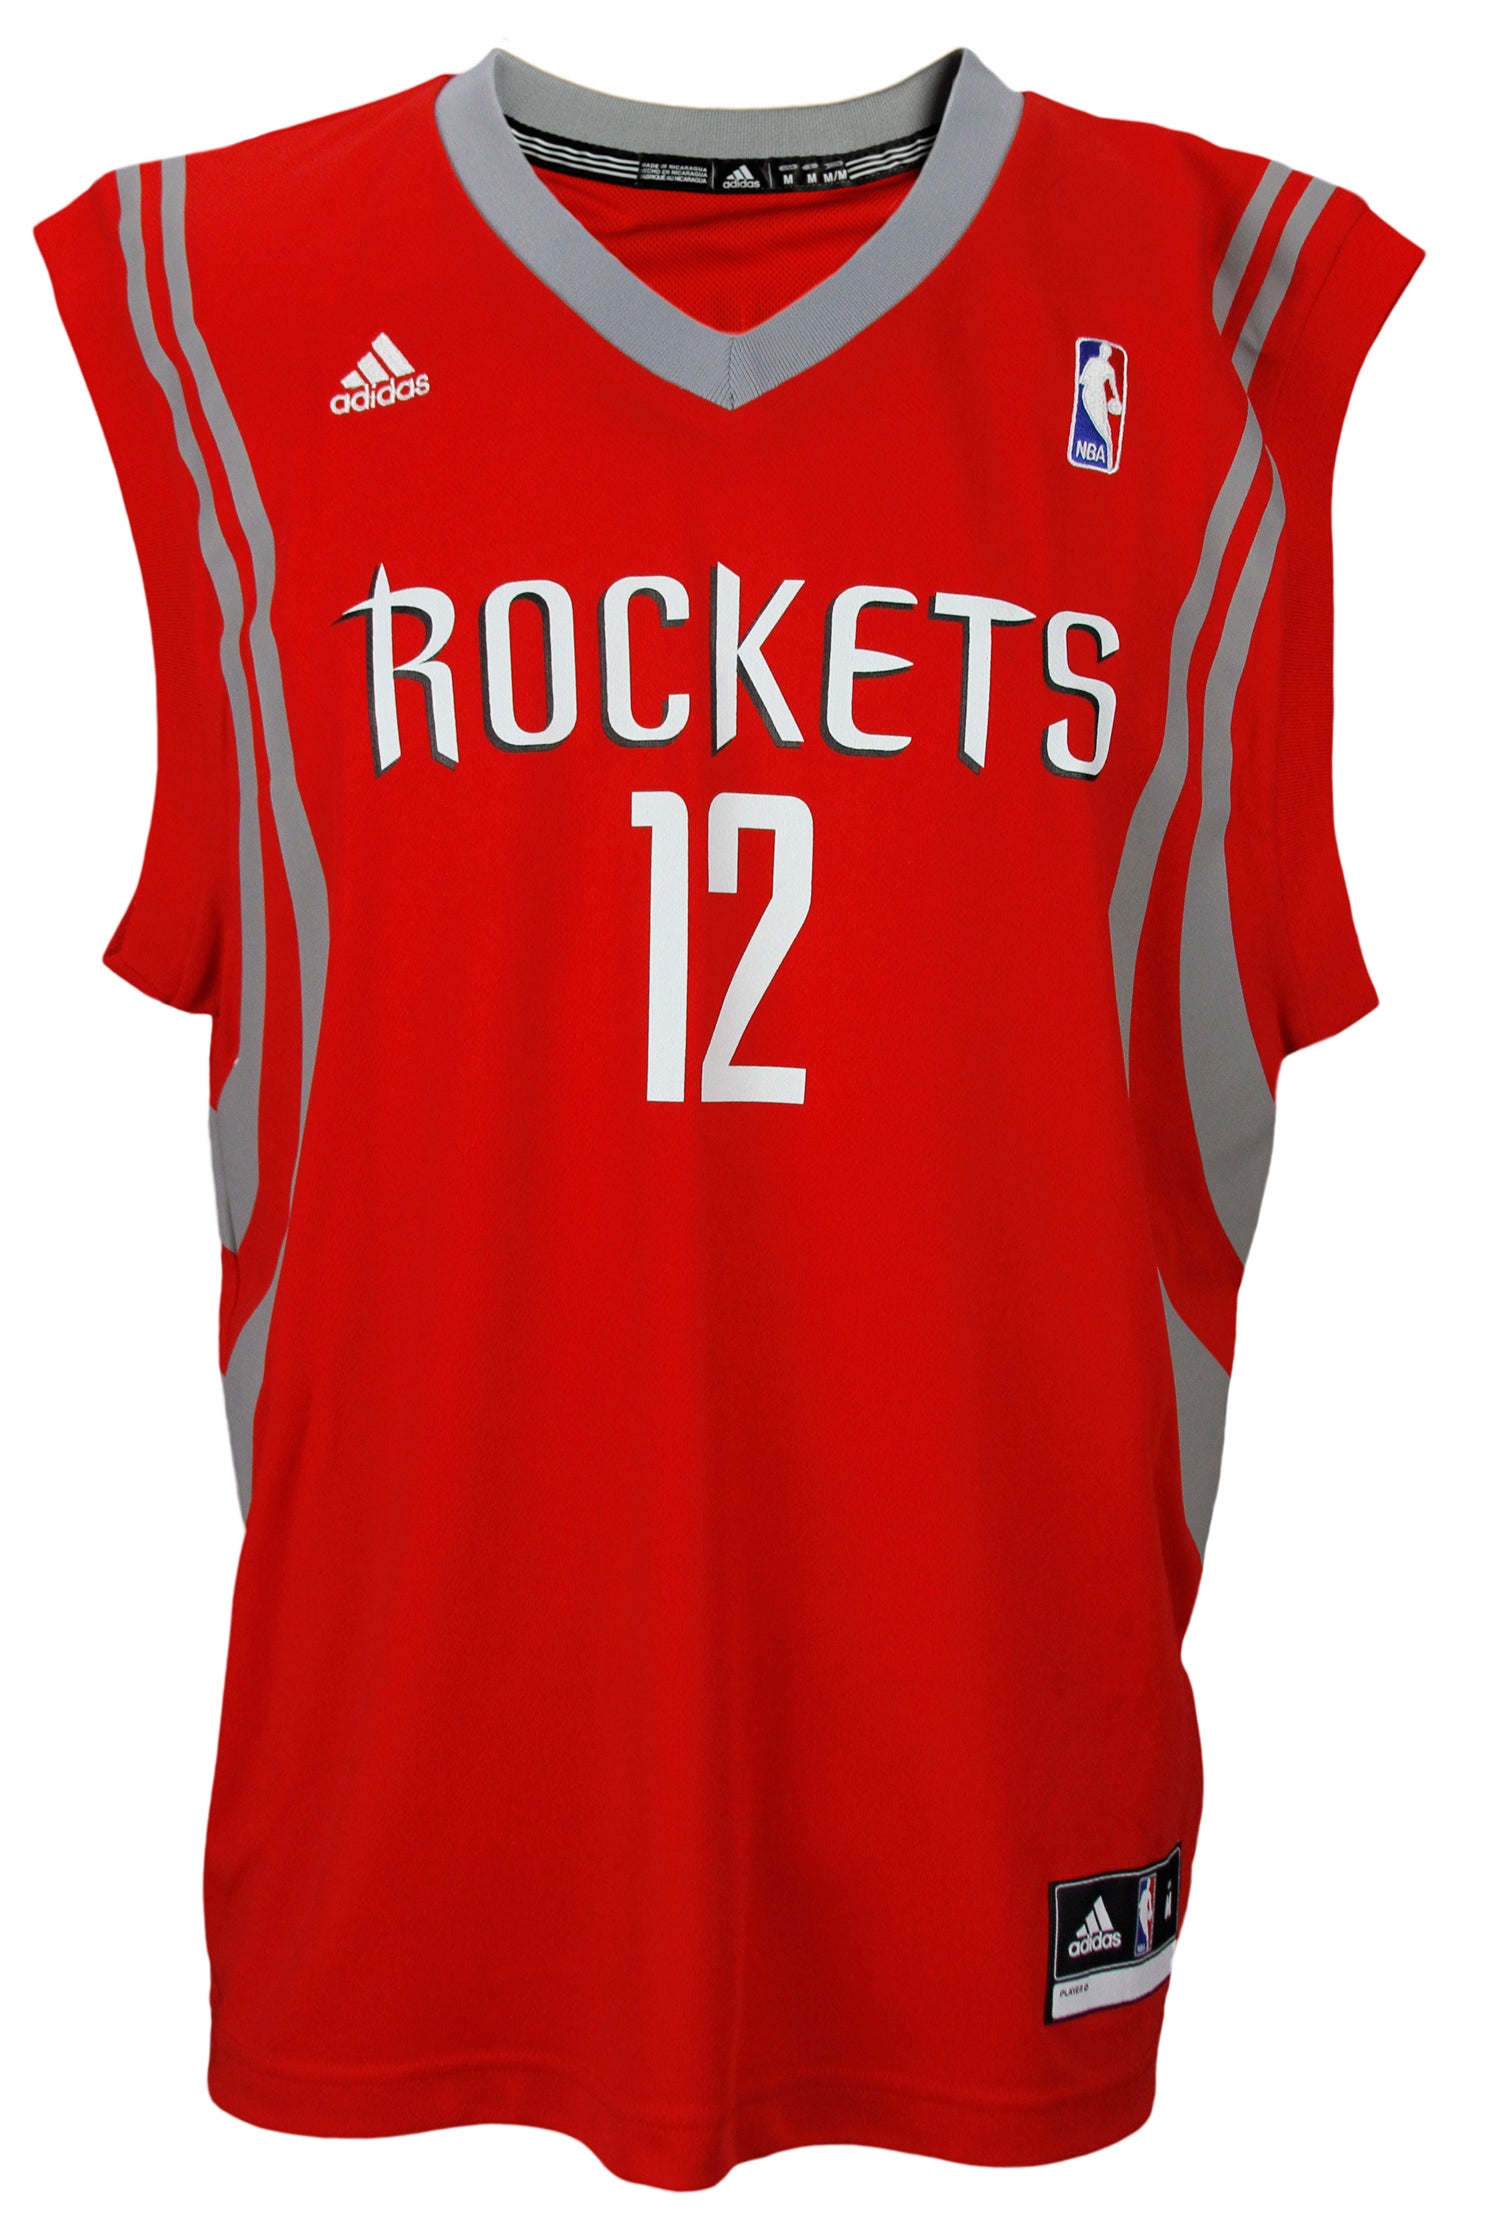 Houston Rockets replica jersey